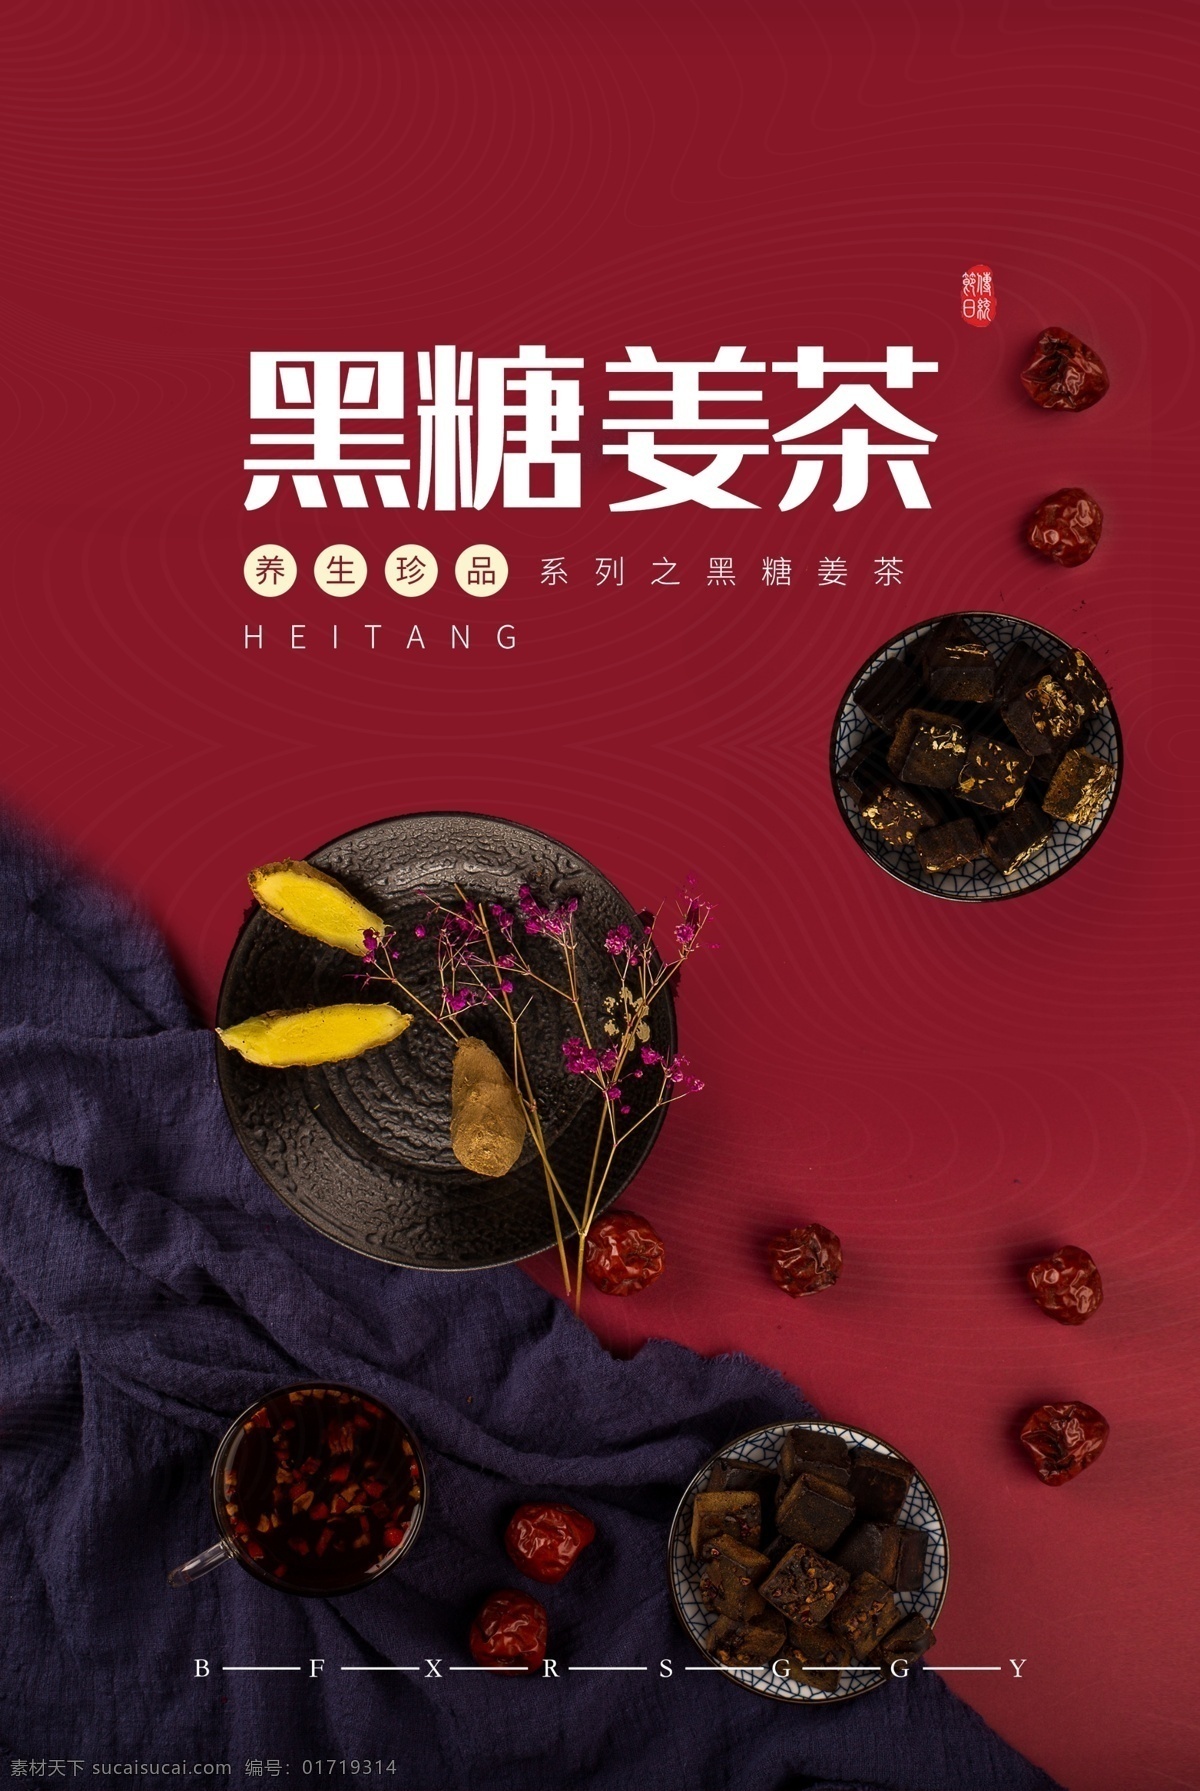 黑糖 姜 茶 美食 活动 宣传海报 素材图片 姜茶 宣传 海报 餐饮美食 类